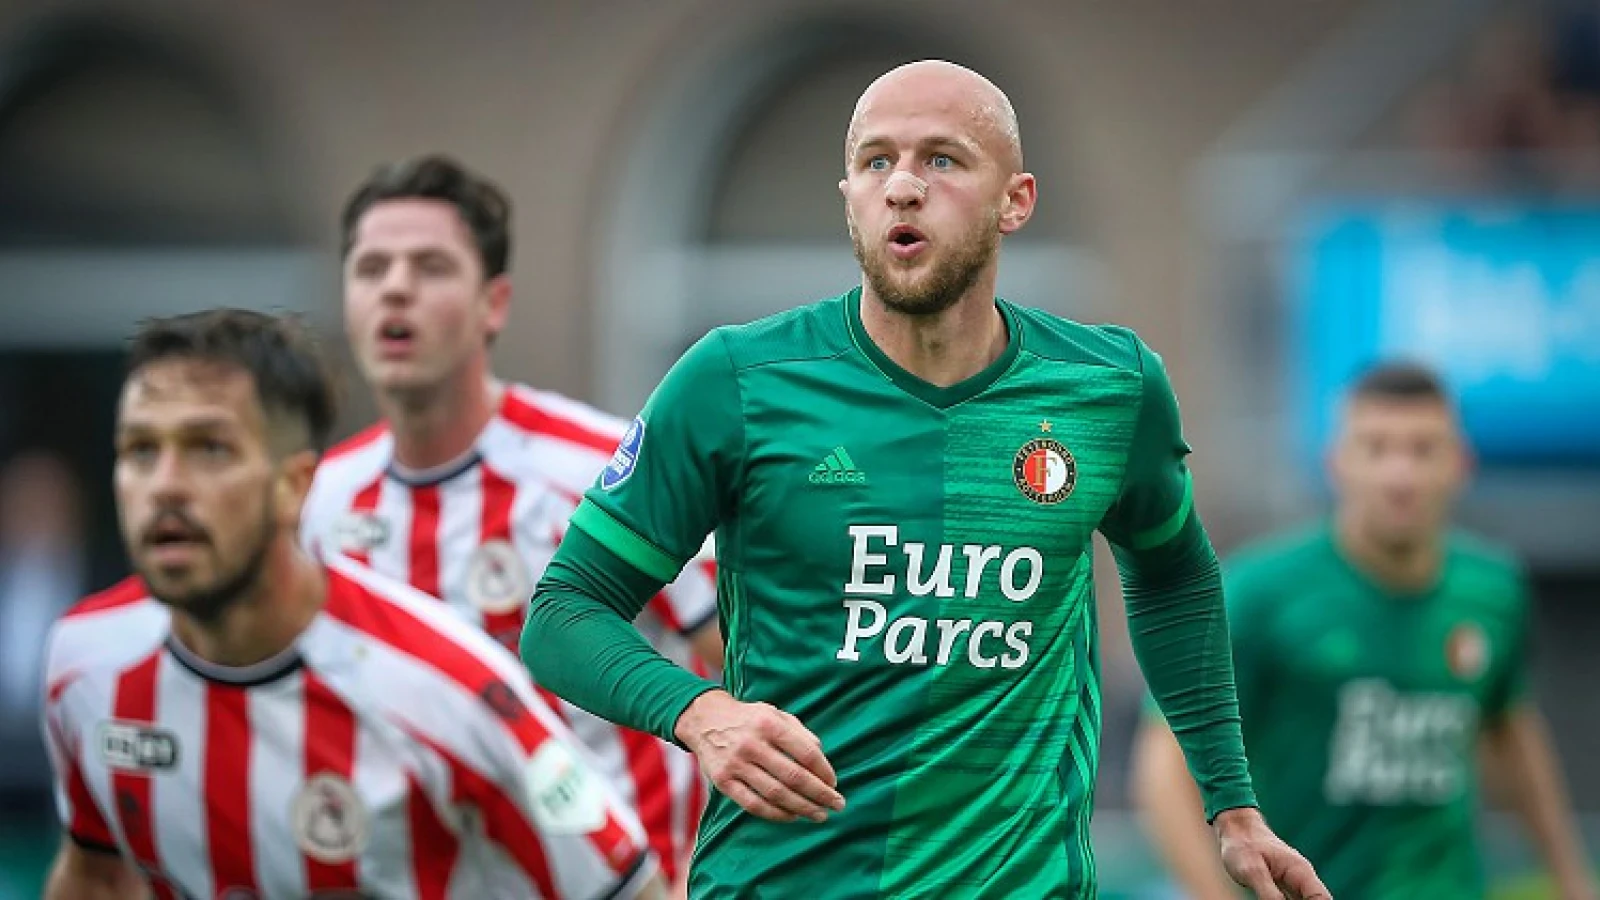 'Trauner helemaal terug van blessure, geen vraagtekens richting Vitesse'